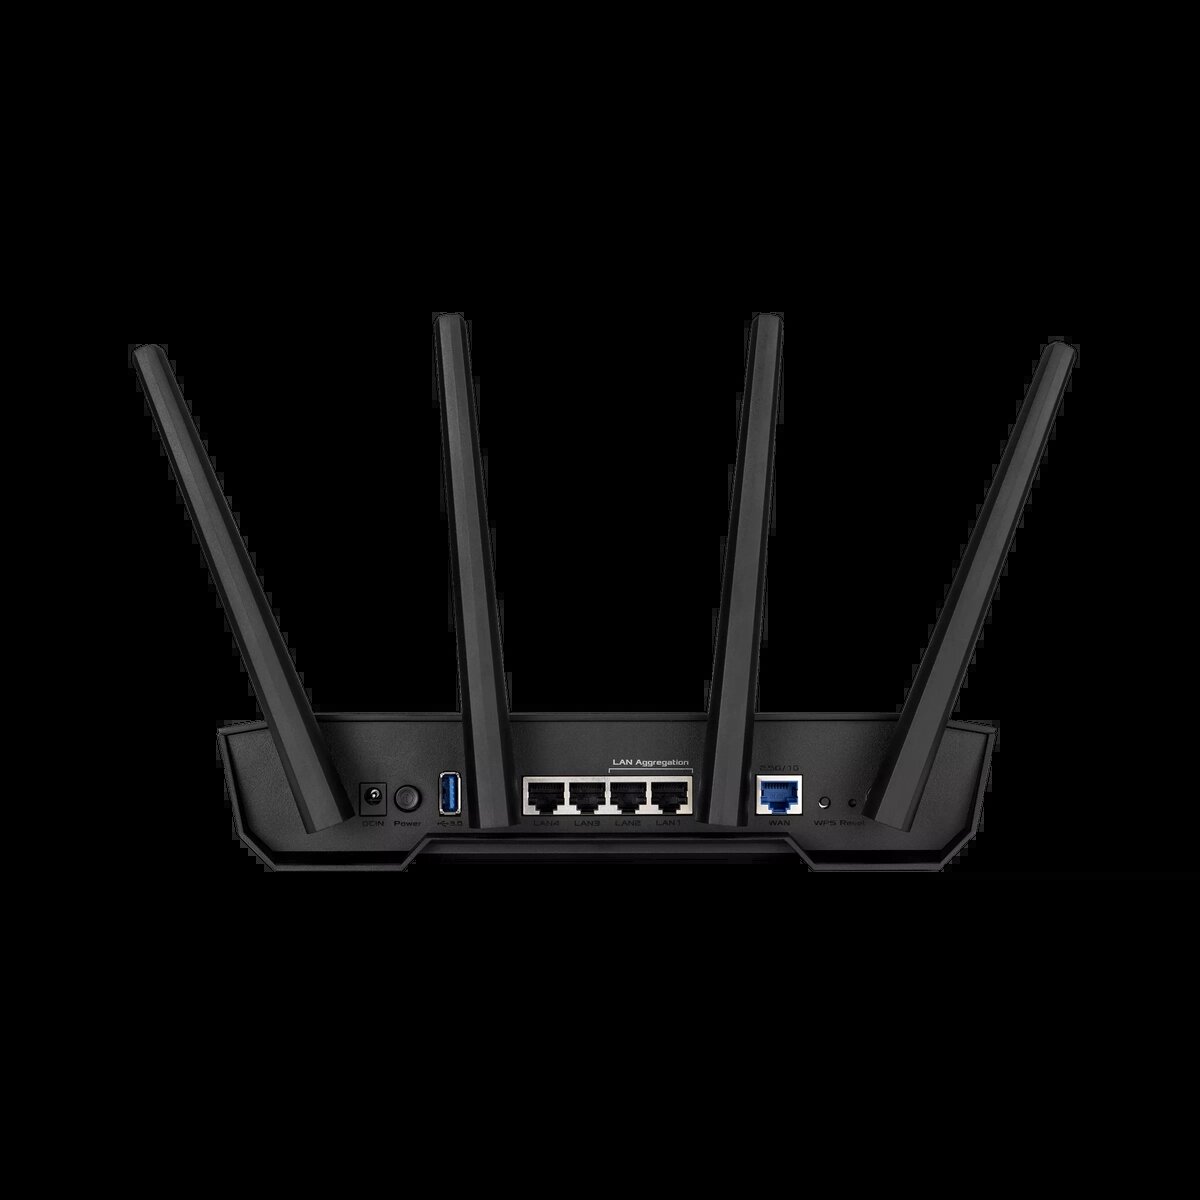 ASUS RT-ax55 Wi-Fi 6. ASUS GS-ax3000. ASUS TUF Gaming роутер. ASUS Dual Band WIFI 6 Gaming Router TUF-ax3000 v2 802.11AX, 10/100/1000 Mbit/s, Ethernet lan RJ-45. Роутер tuf gaming